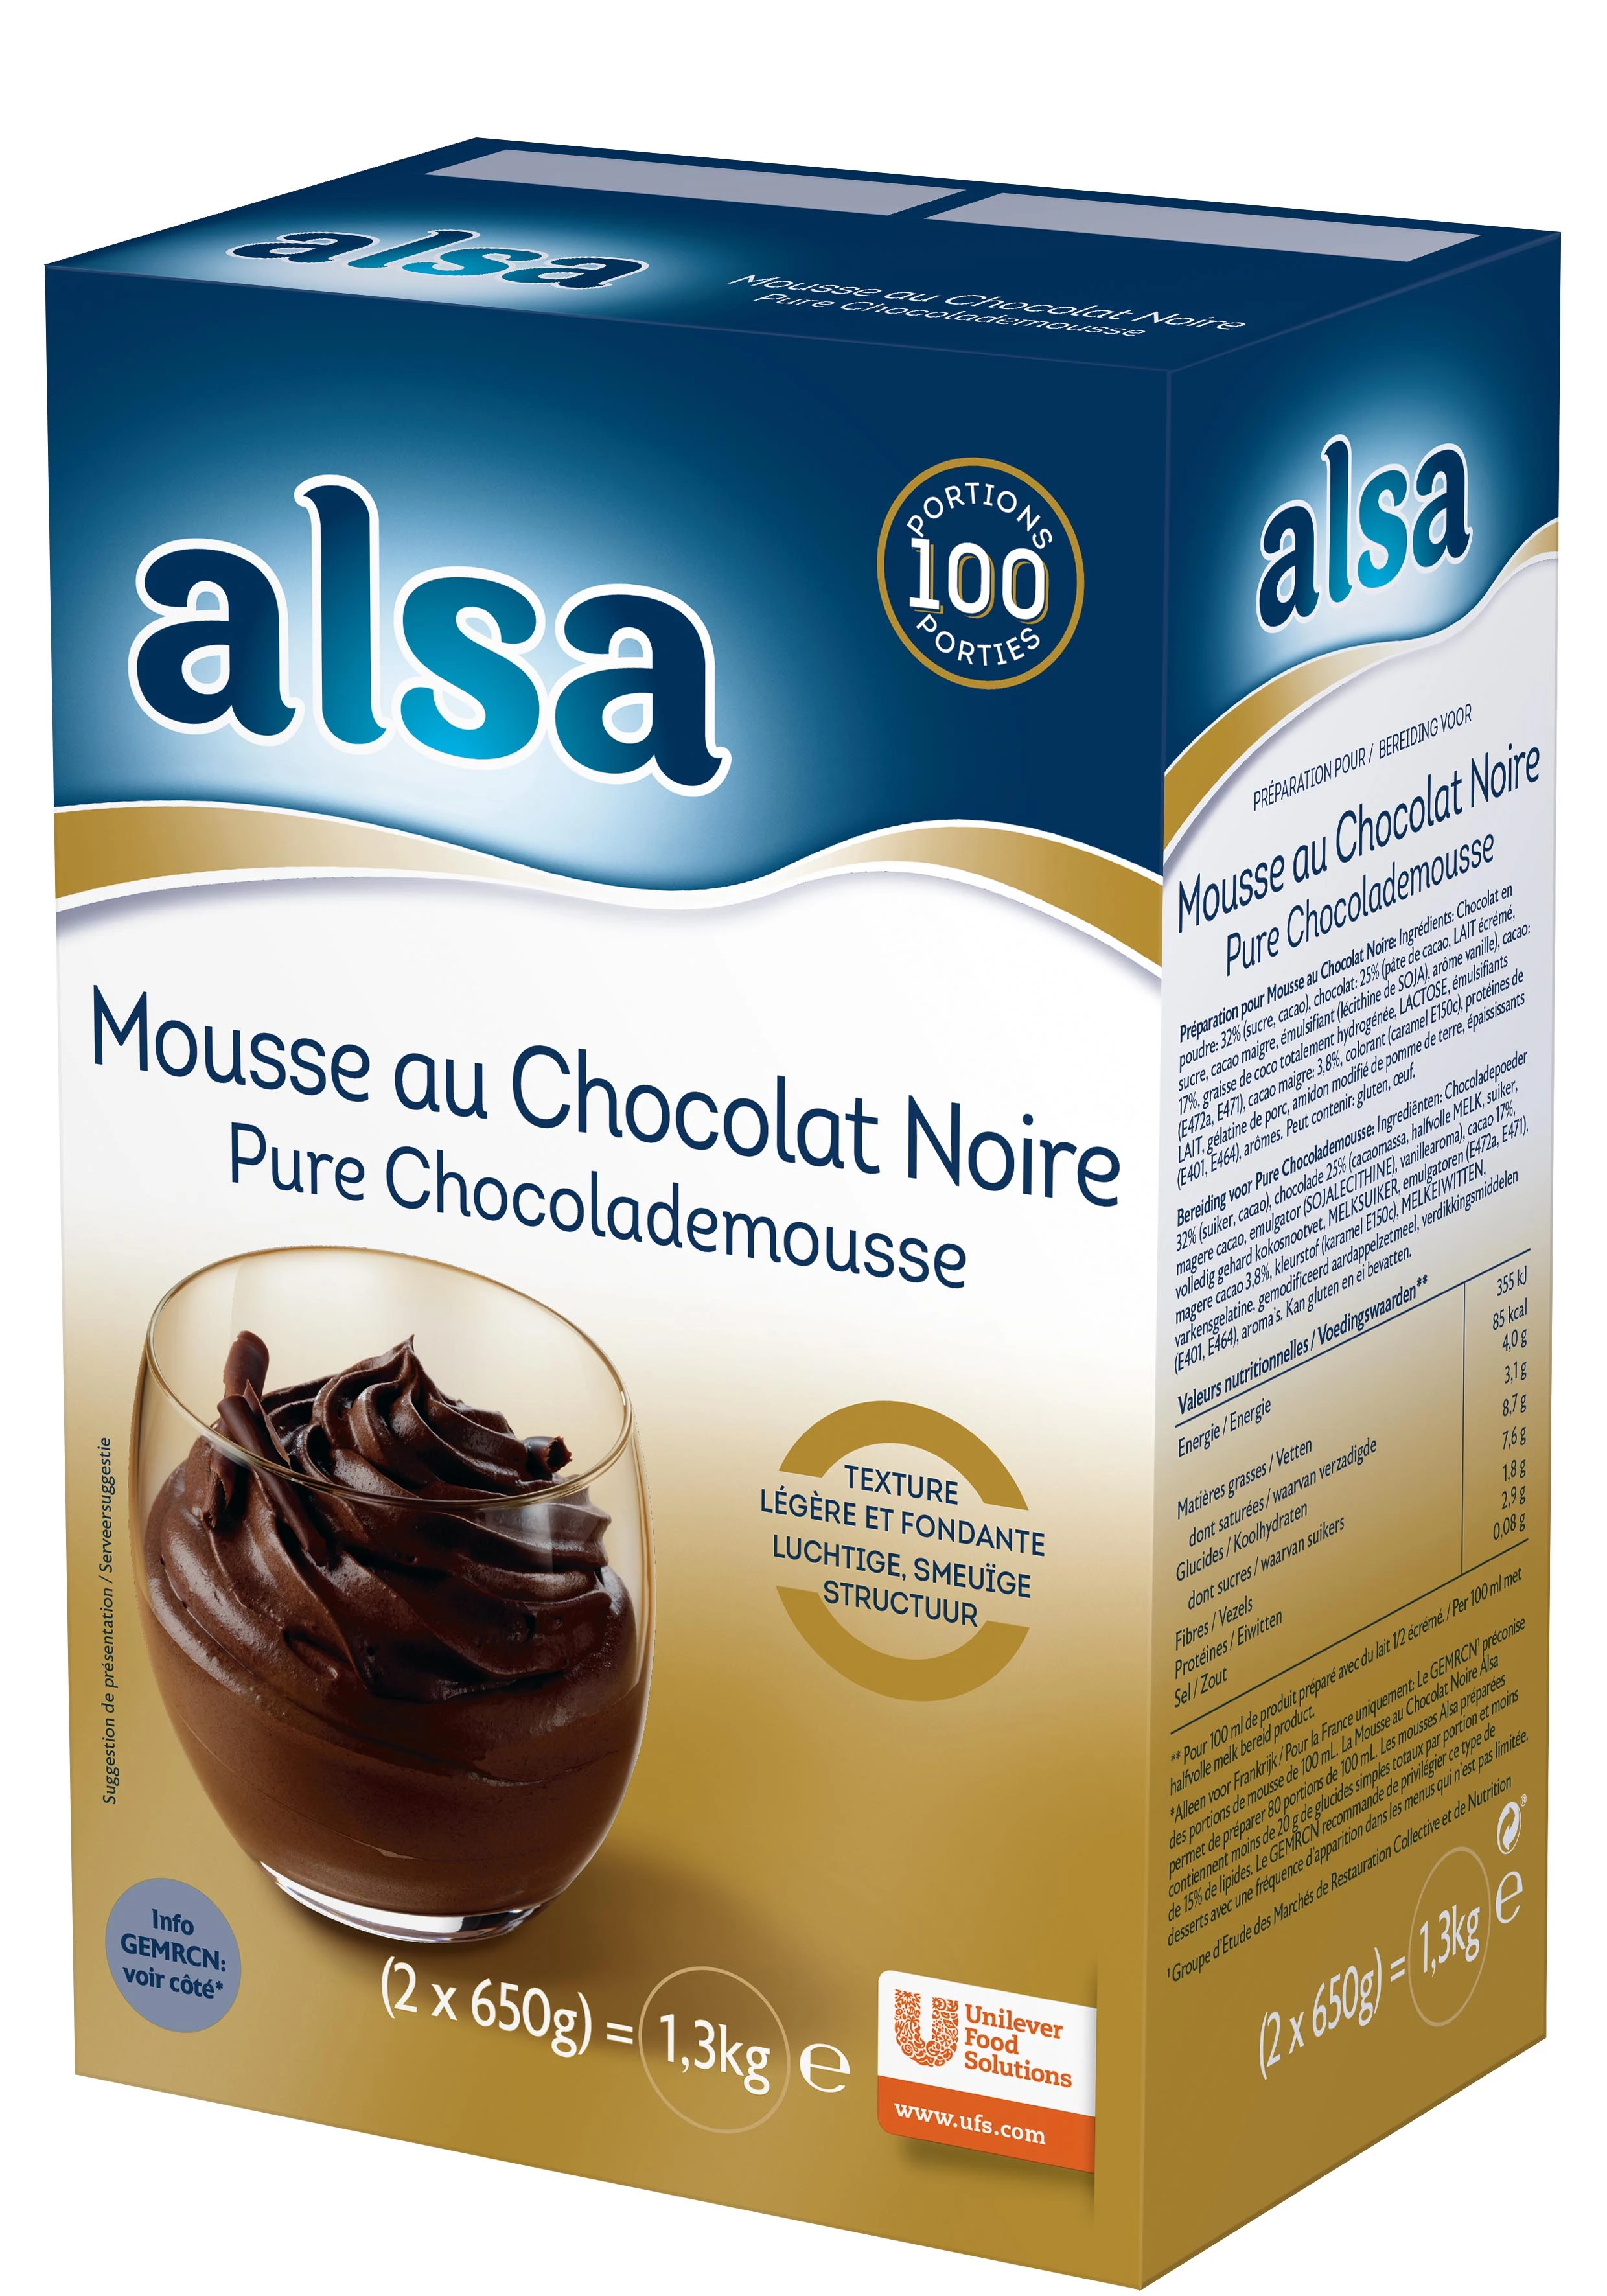 Alsa Mousse Au Chocolat Noir 1,3kg 100 Portions